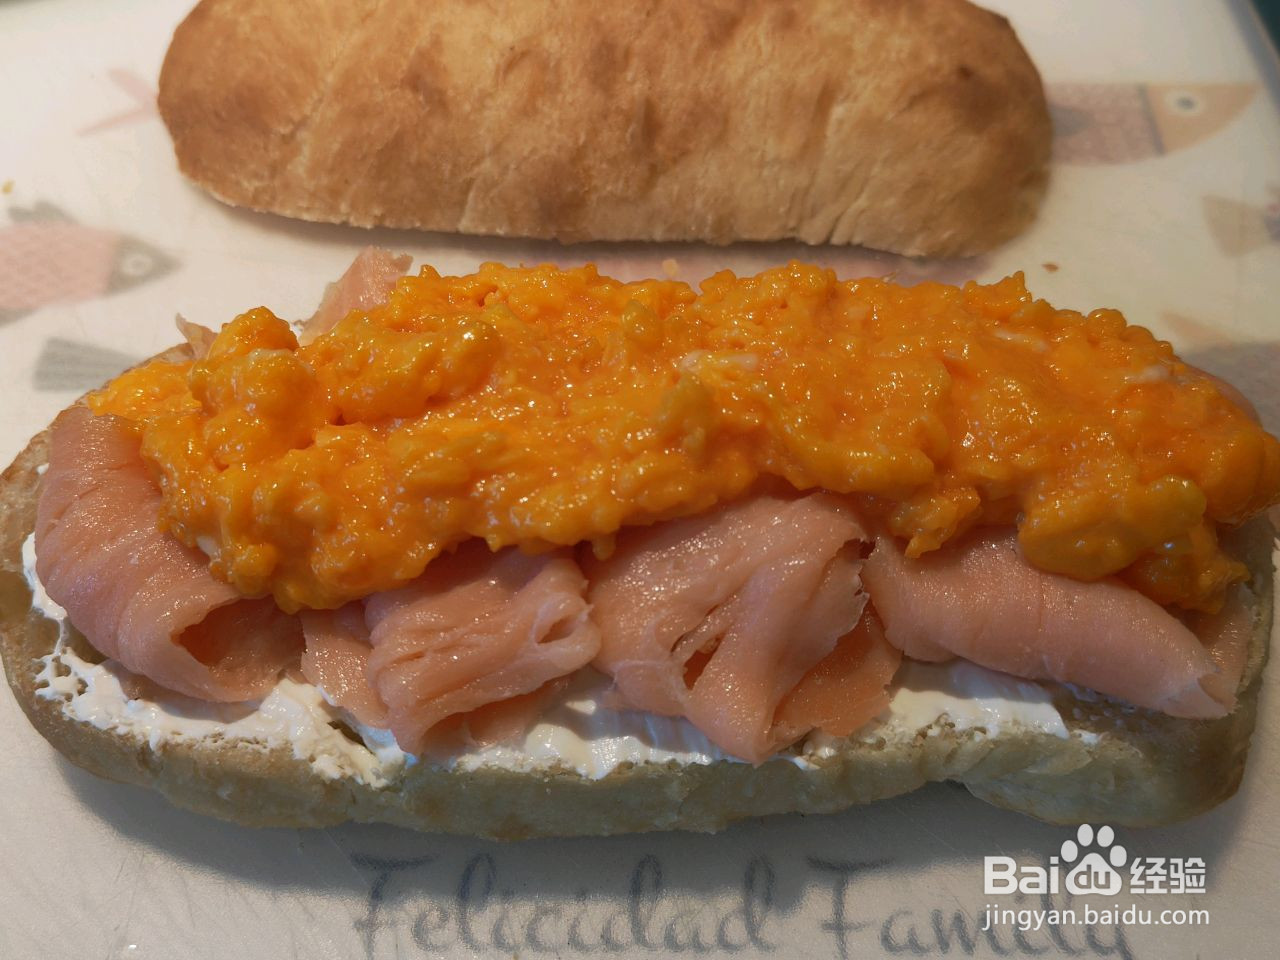 法式三文鱼炒蛋三明治的做法